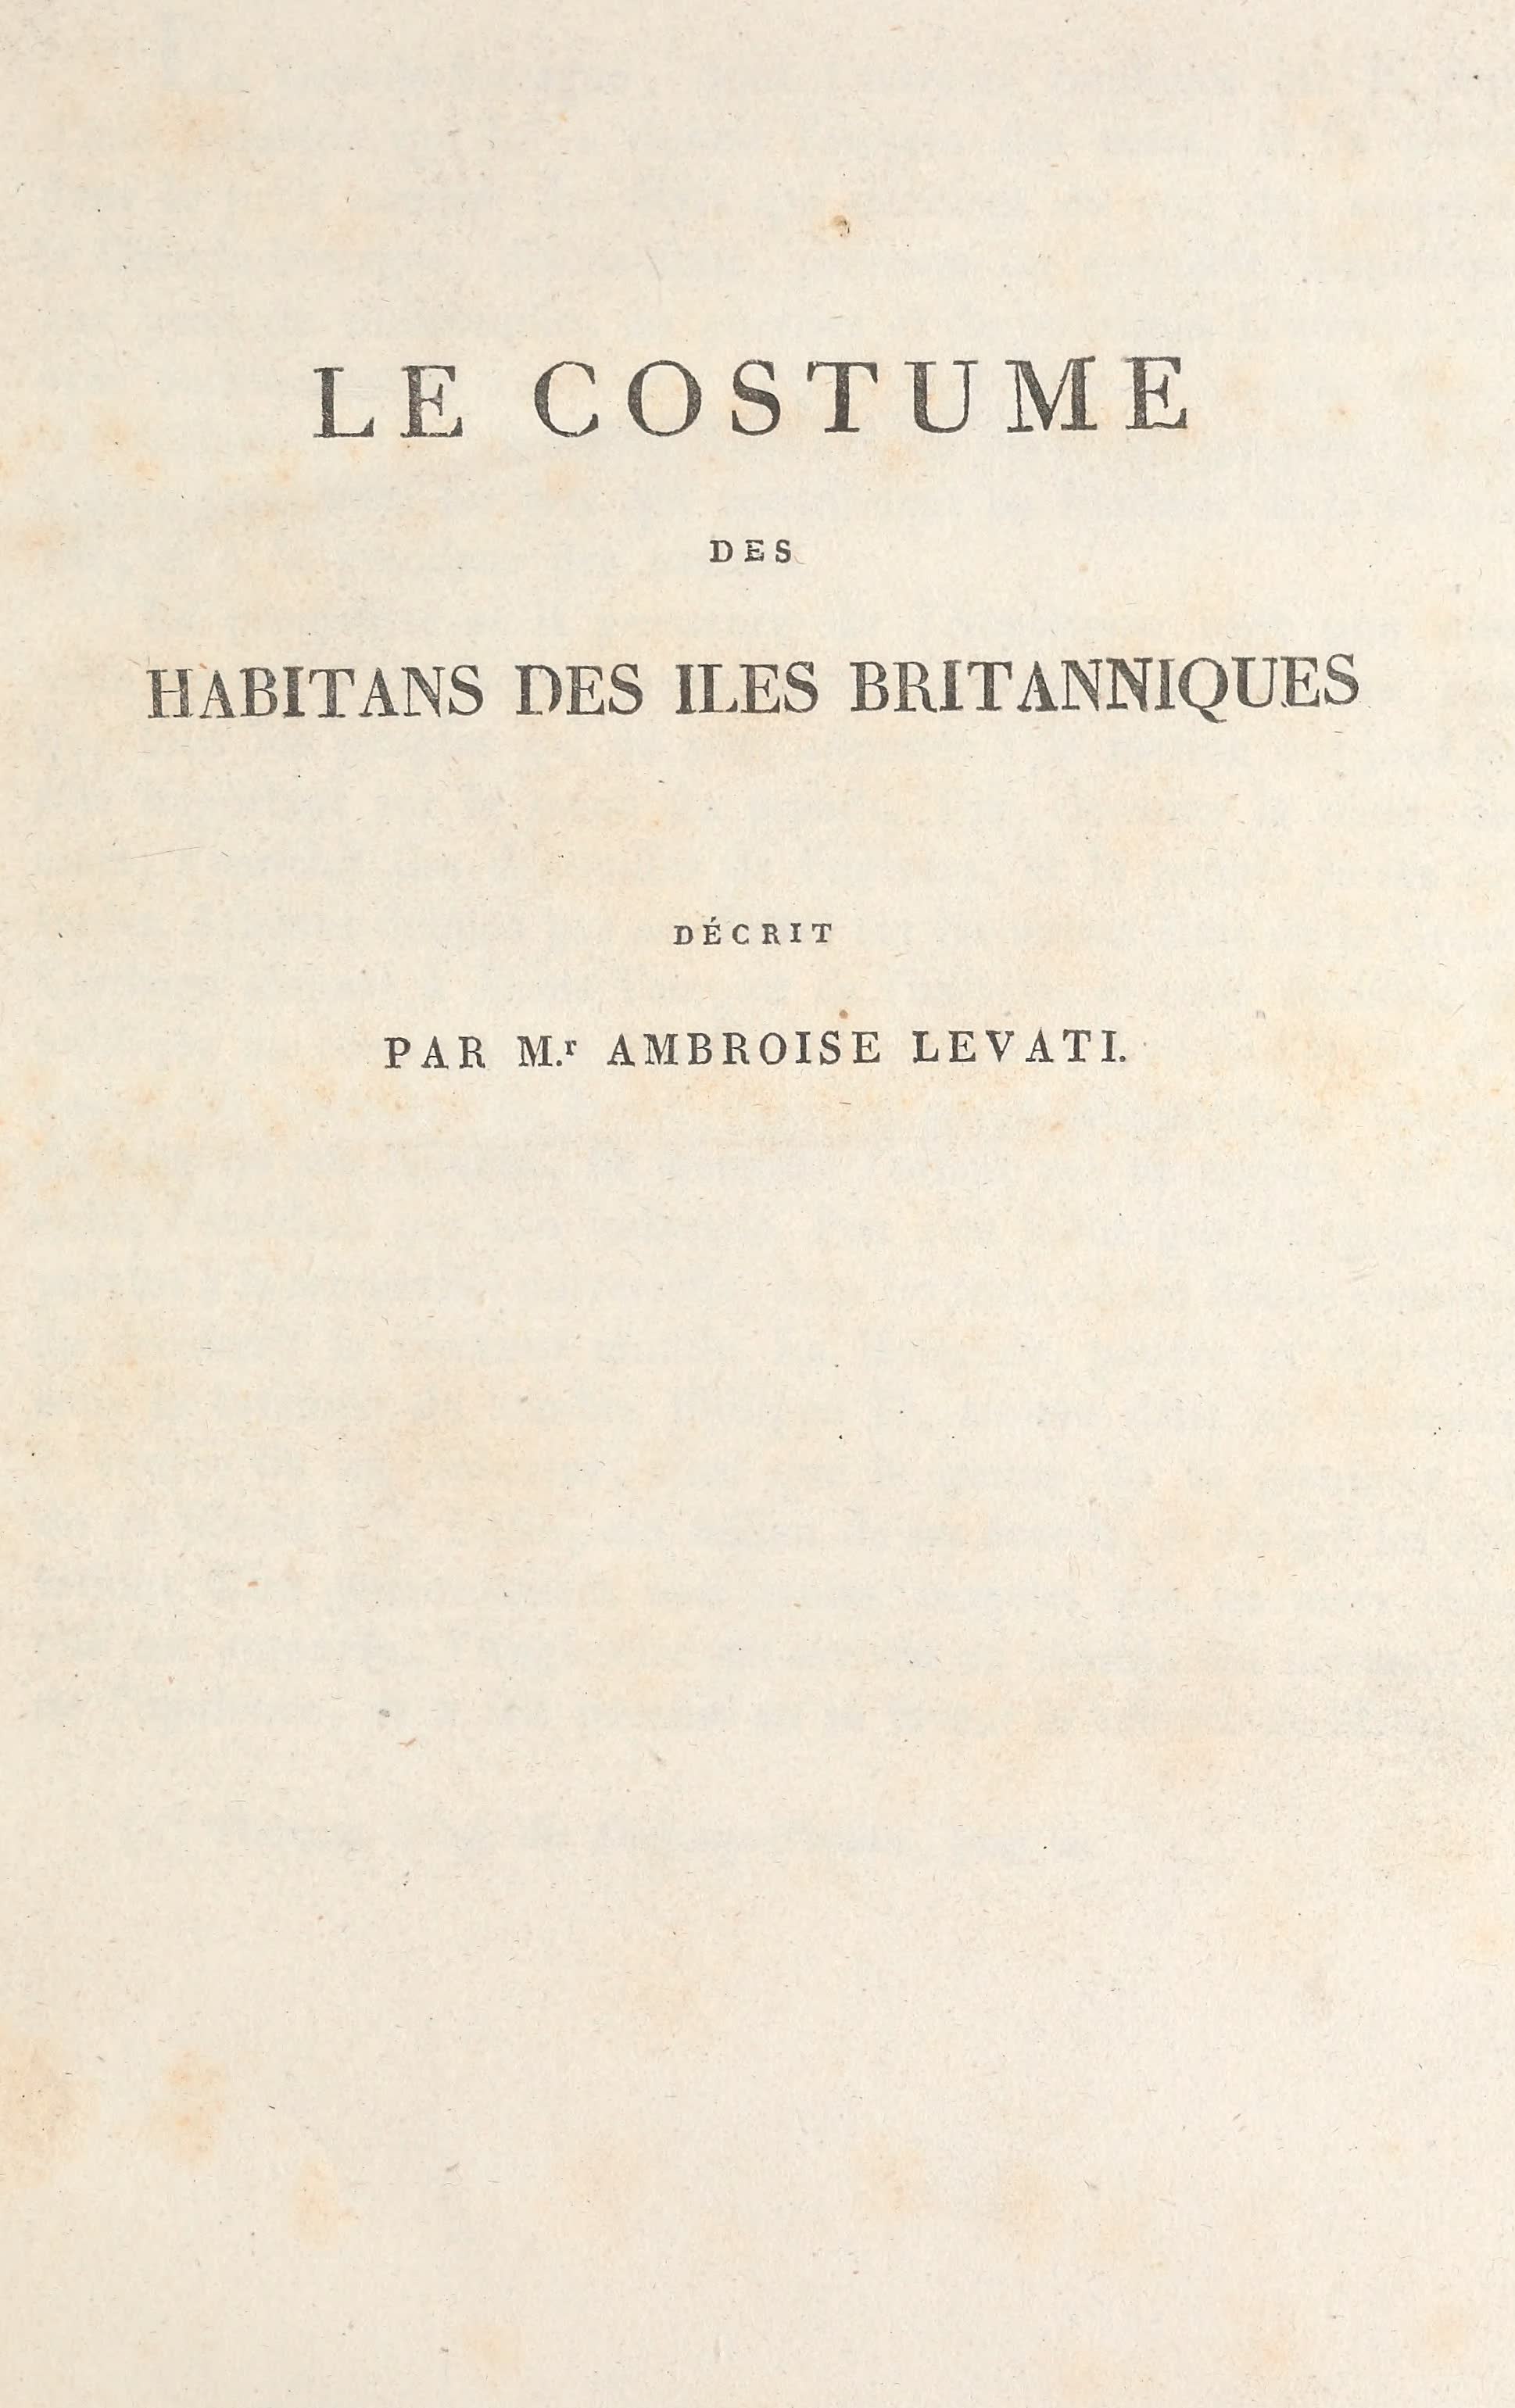 Le Costume Ancien et Moderne [Europe] Vol. 6 - Title Page - Le Costume des Iles Britanniques (1827)